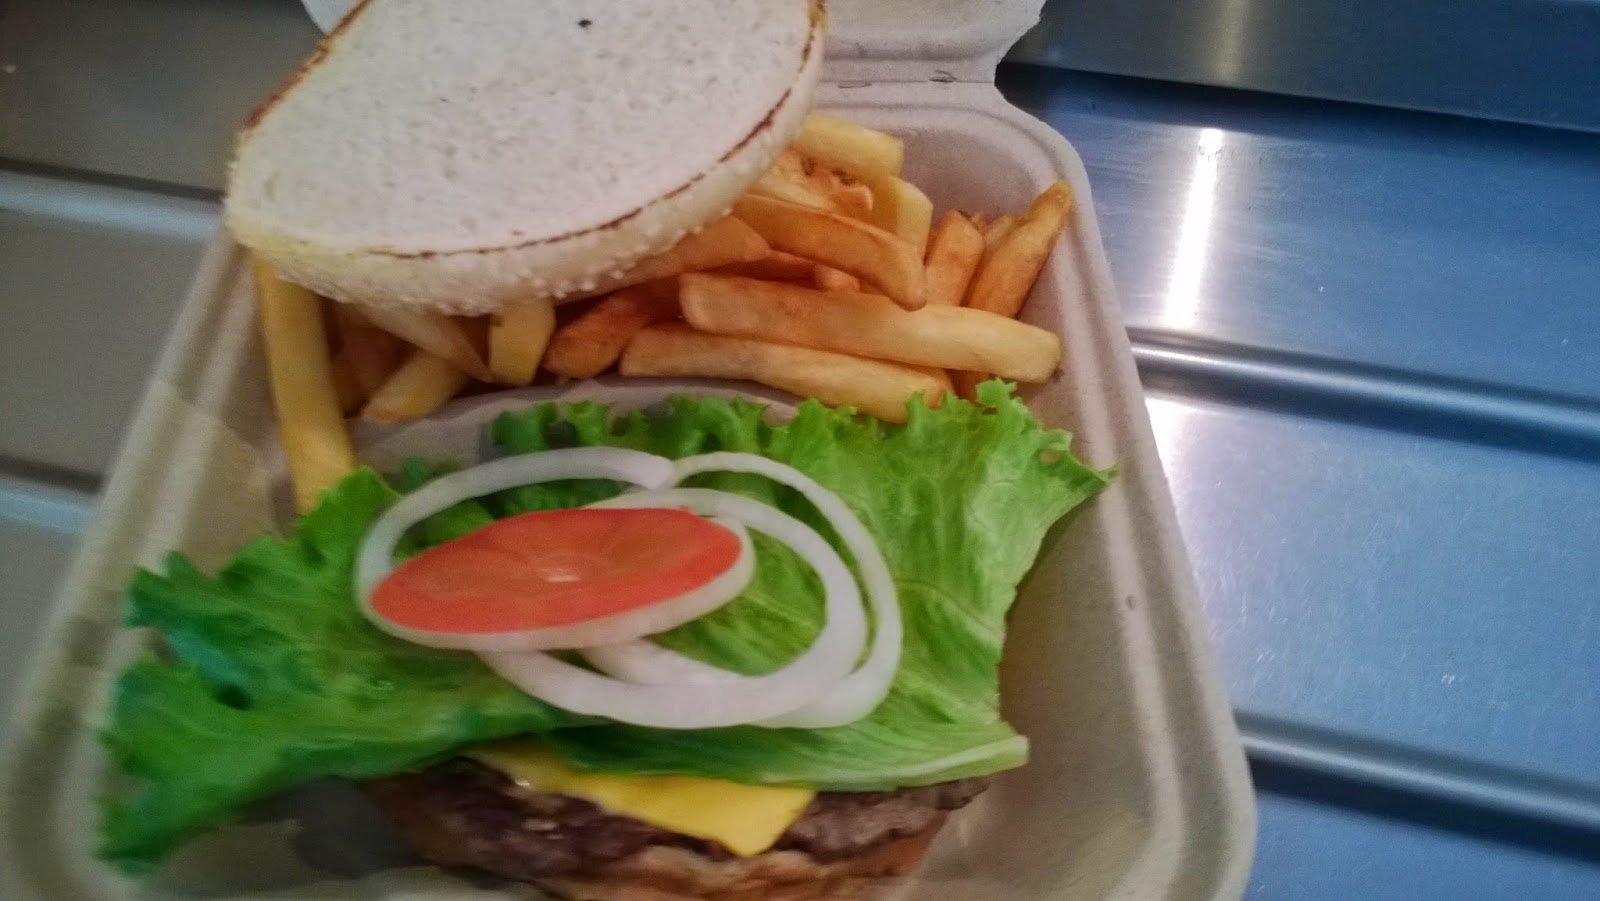 My burger. Plain but delicious!